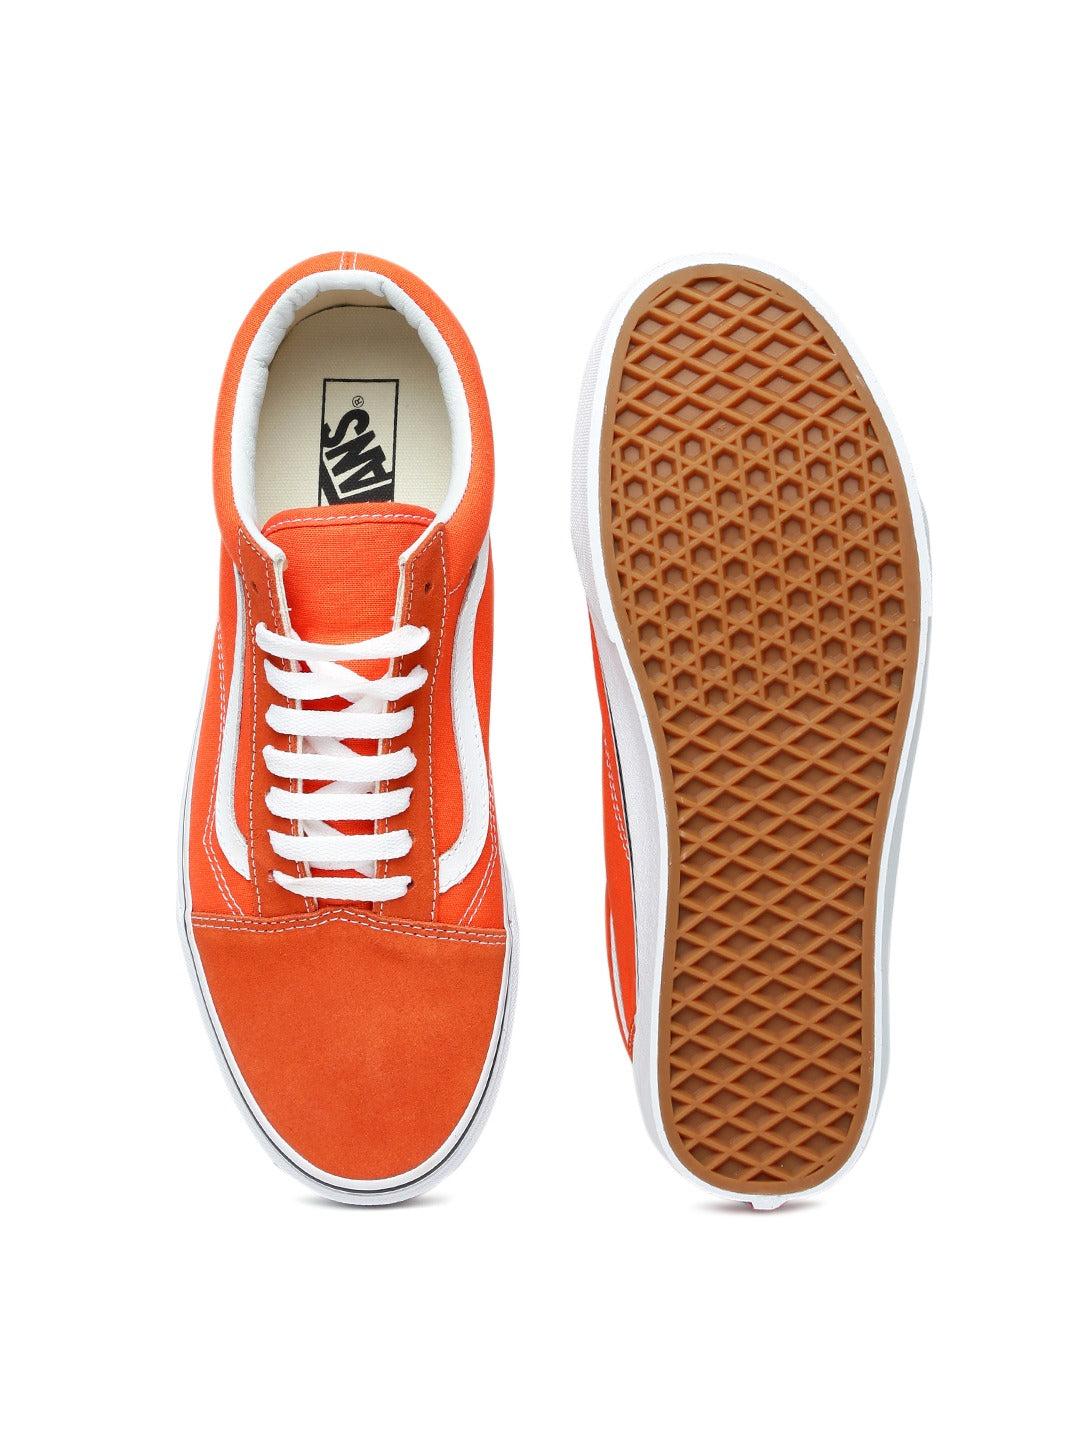 Orange Old Skool Sneakers